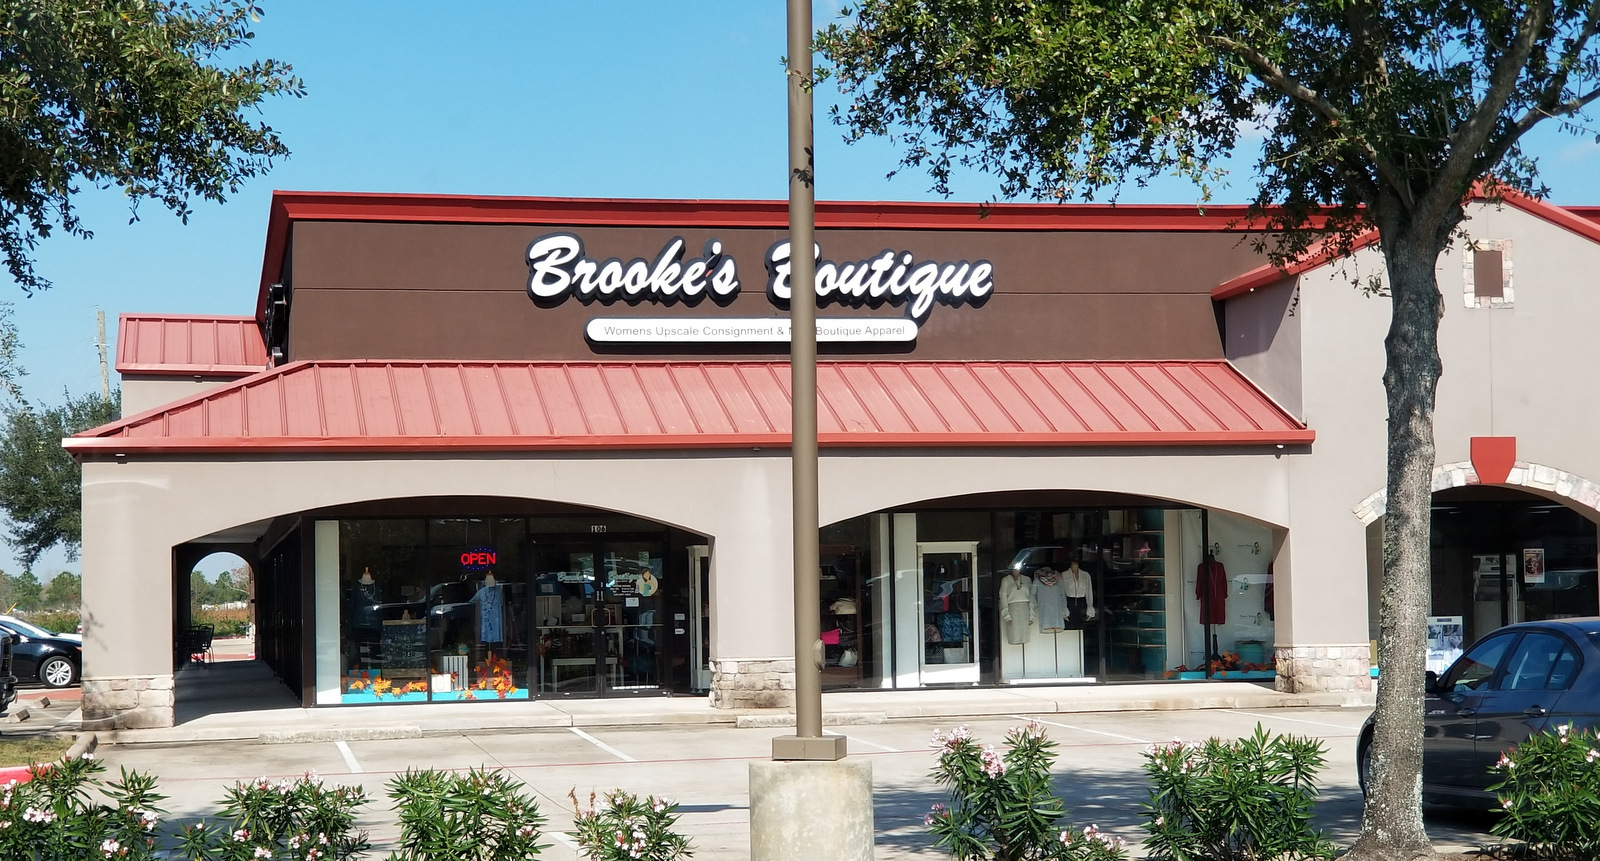 Brooke's Boutique